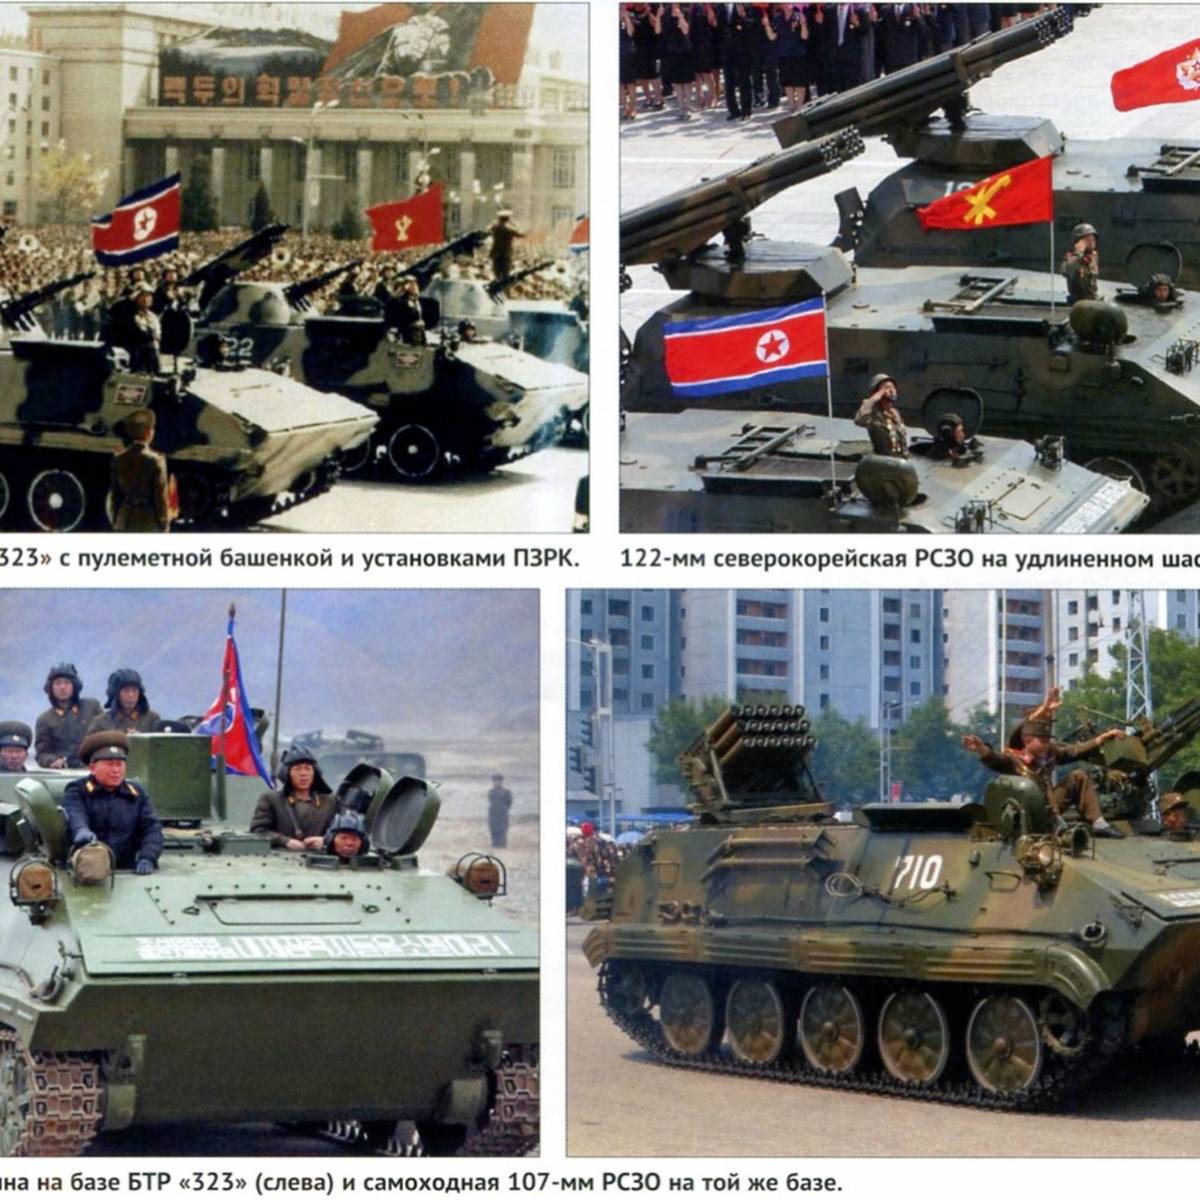 Бронетанковая техника КНДР 1949-2016 гг. Часть 2. Шестьдесят лет в окопах